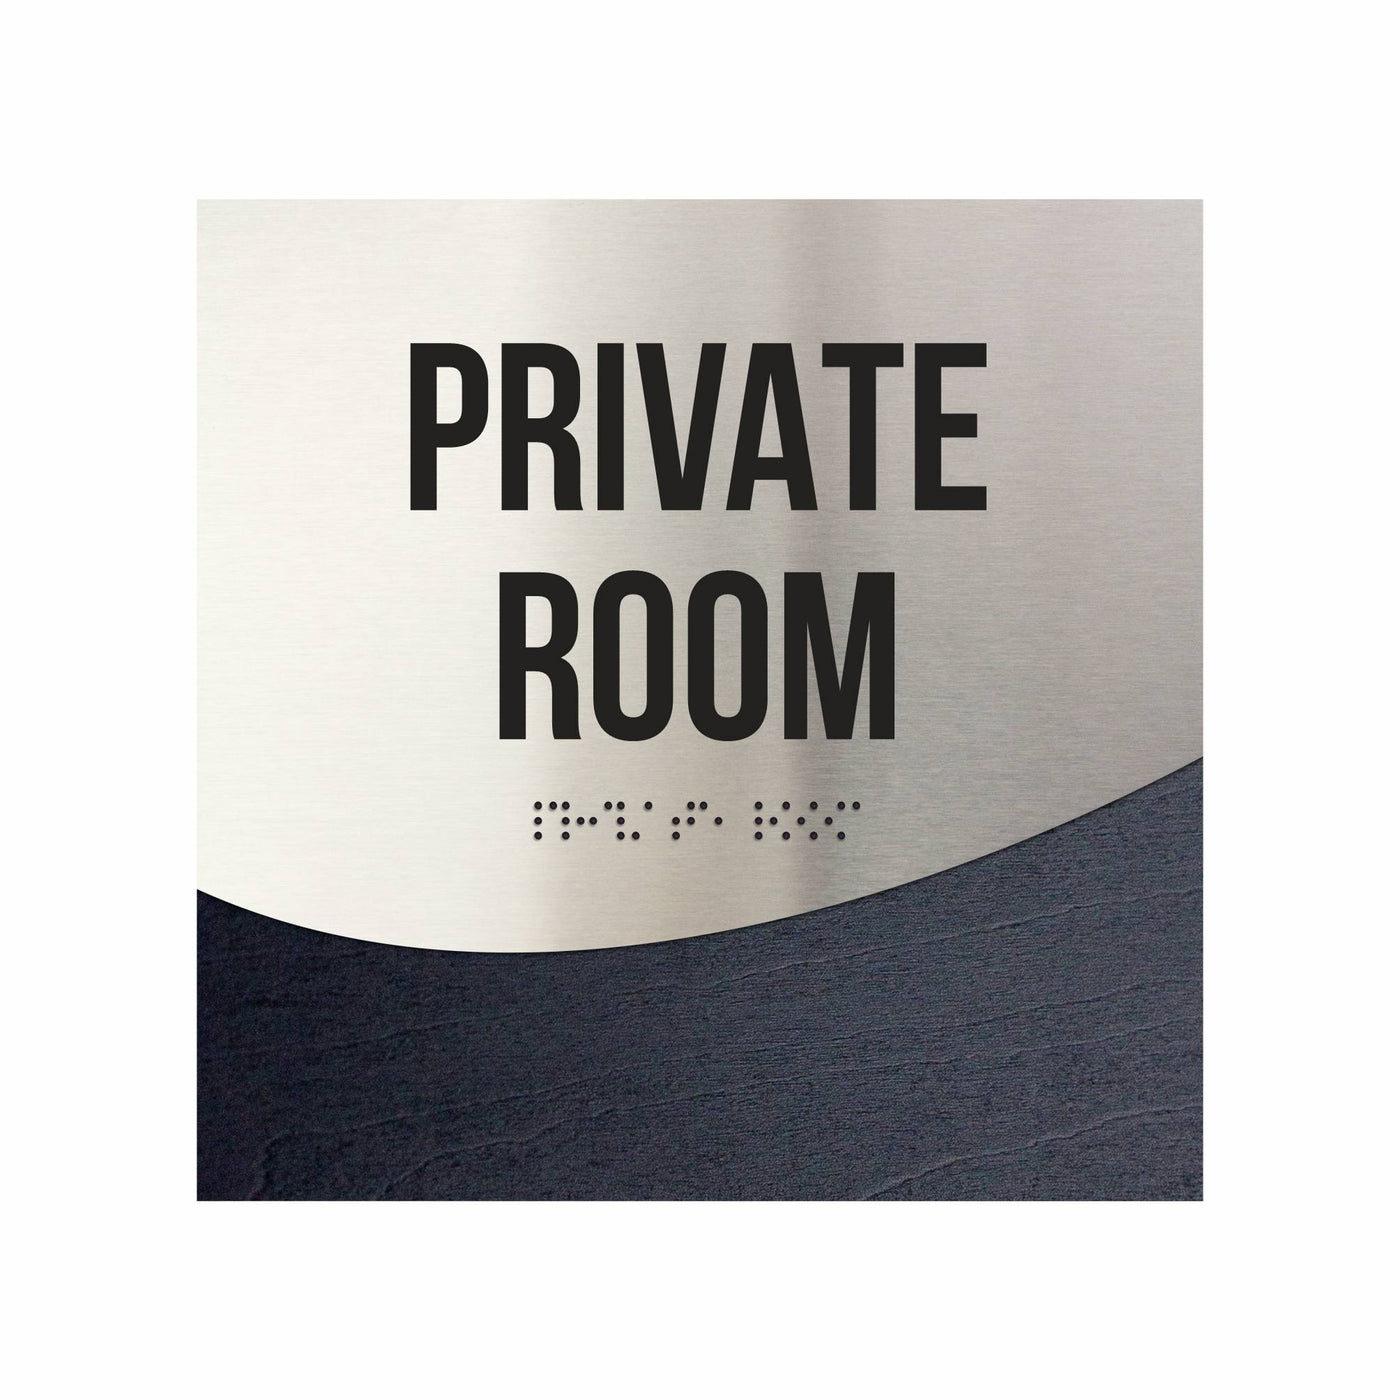 Private Room Door Sign - Stainless Steel & Wood Door Plate "Jure" Design